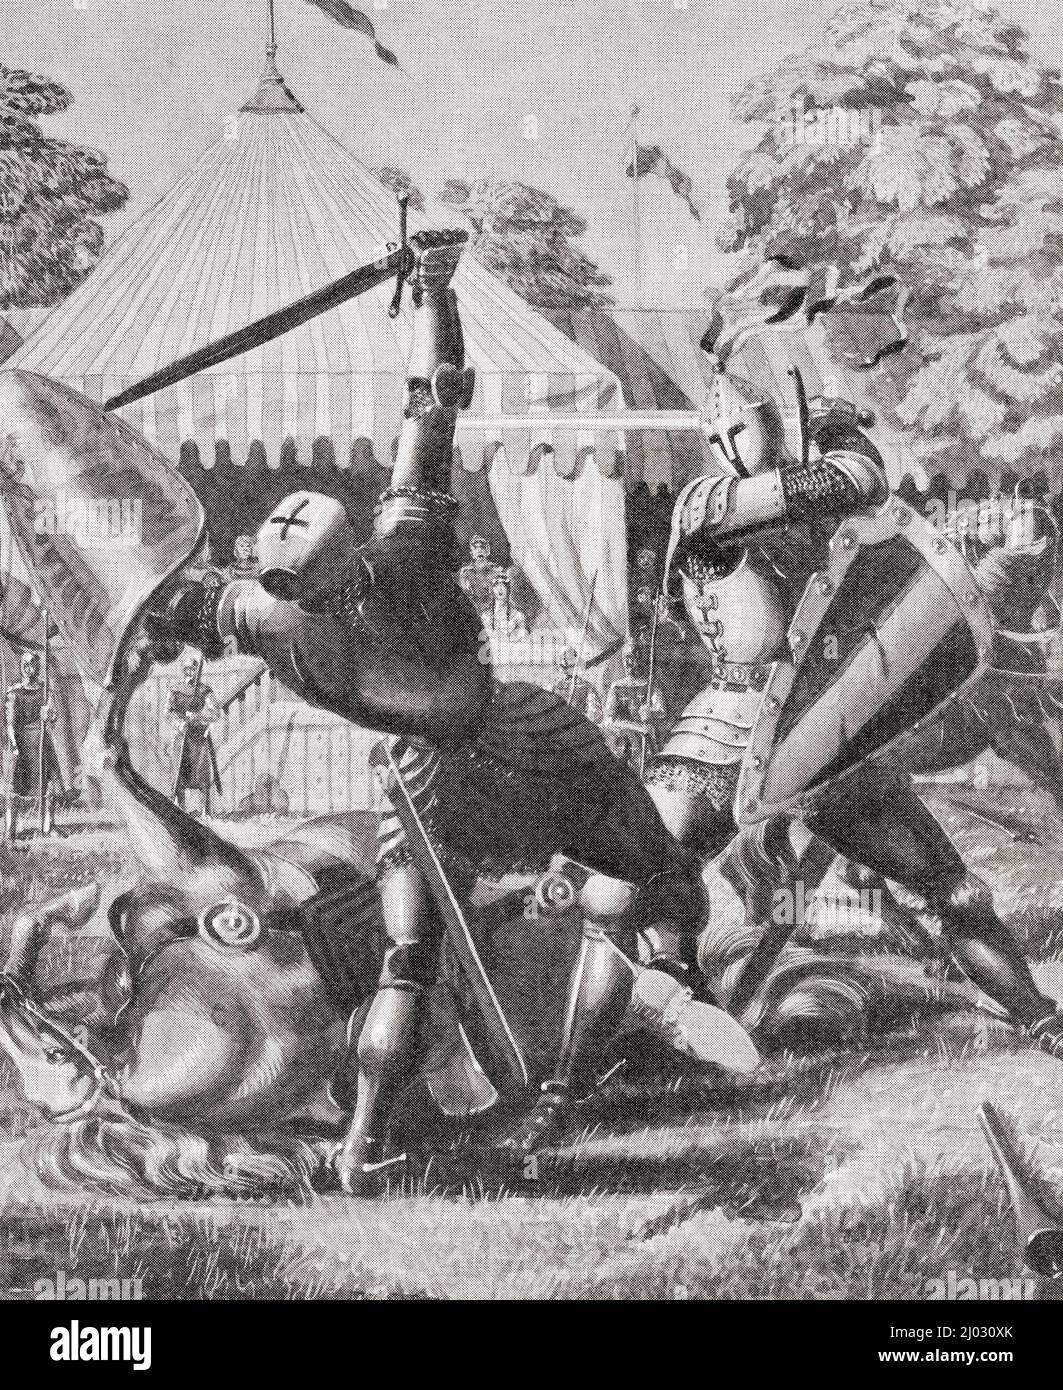 Dos caballeros peleando en la época del rey Arturo. Del País de las Maravillas del Conocimiento, publicado c.1930 Foto de stock